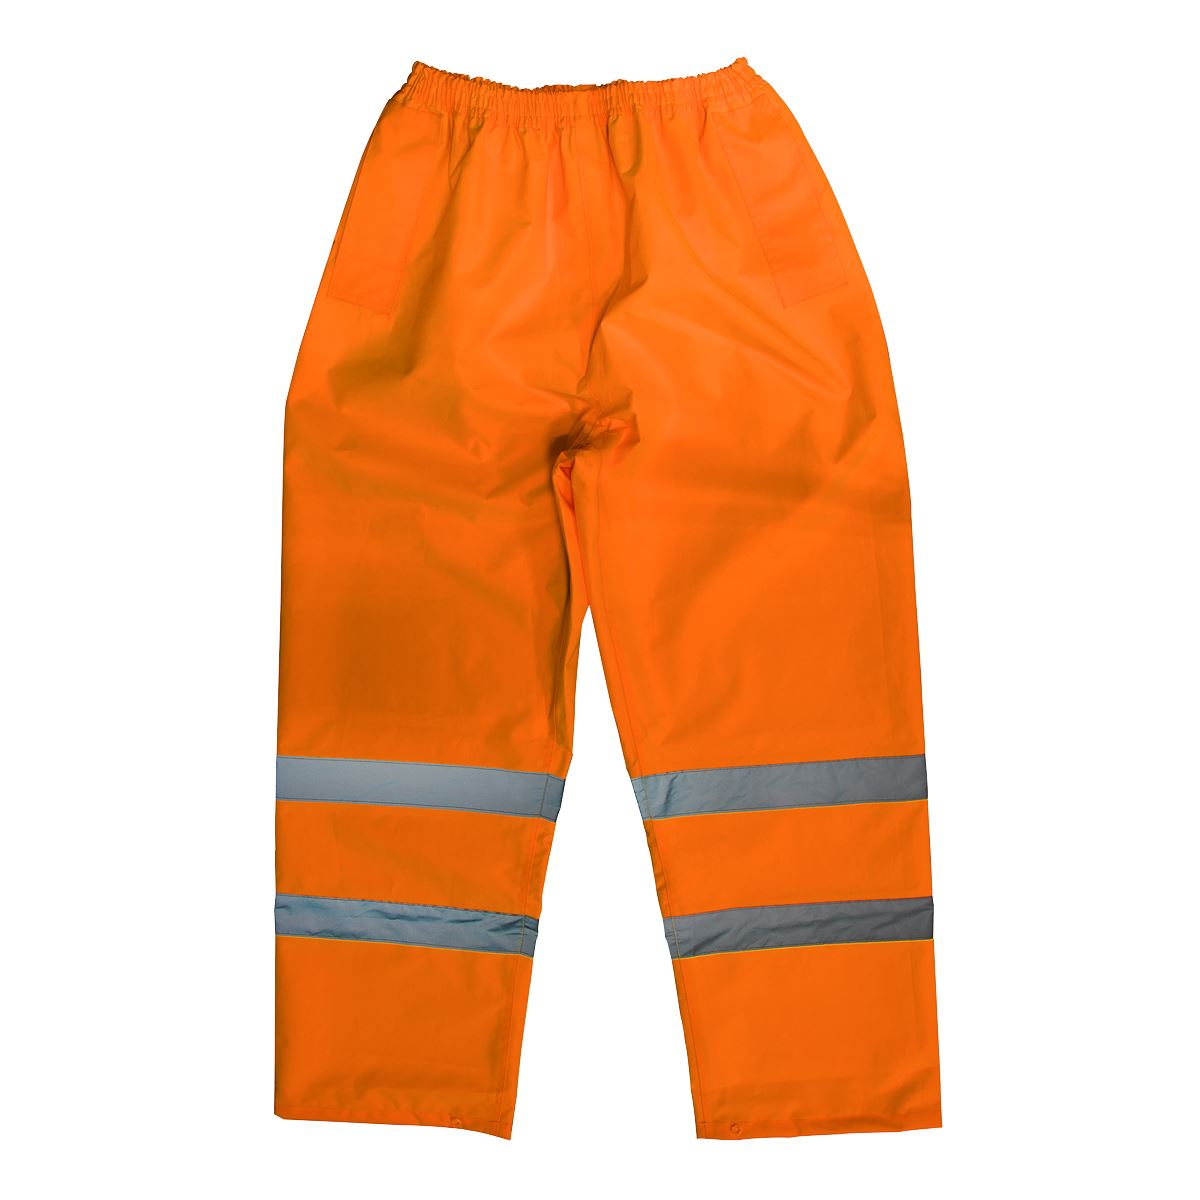 Worksafe by Sealey Hi-Vis Orange Waterproof Trousers - Medium